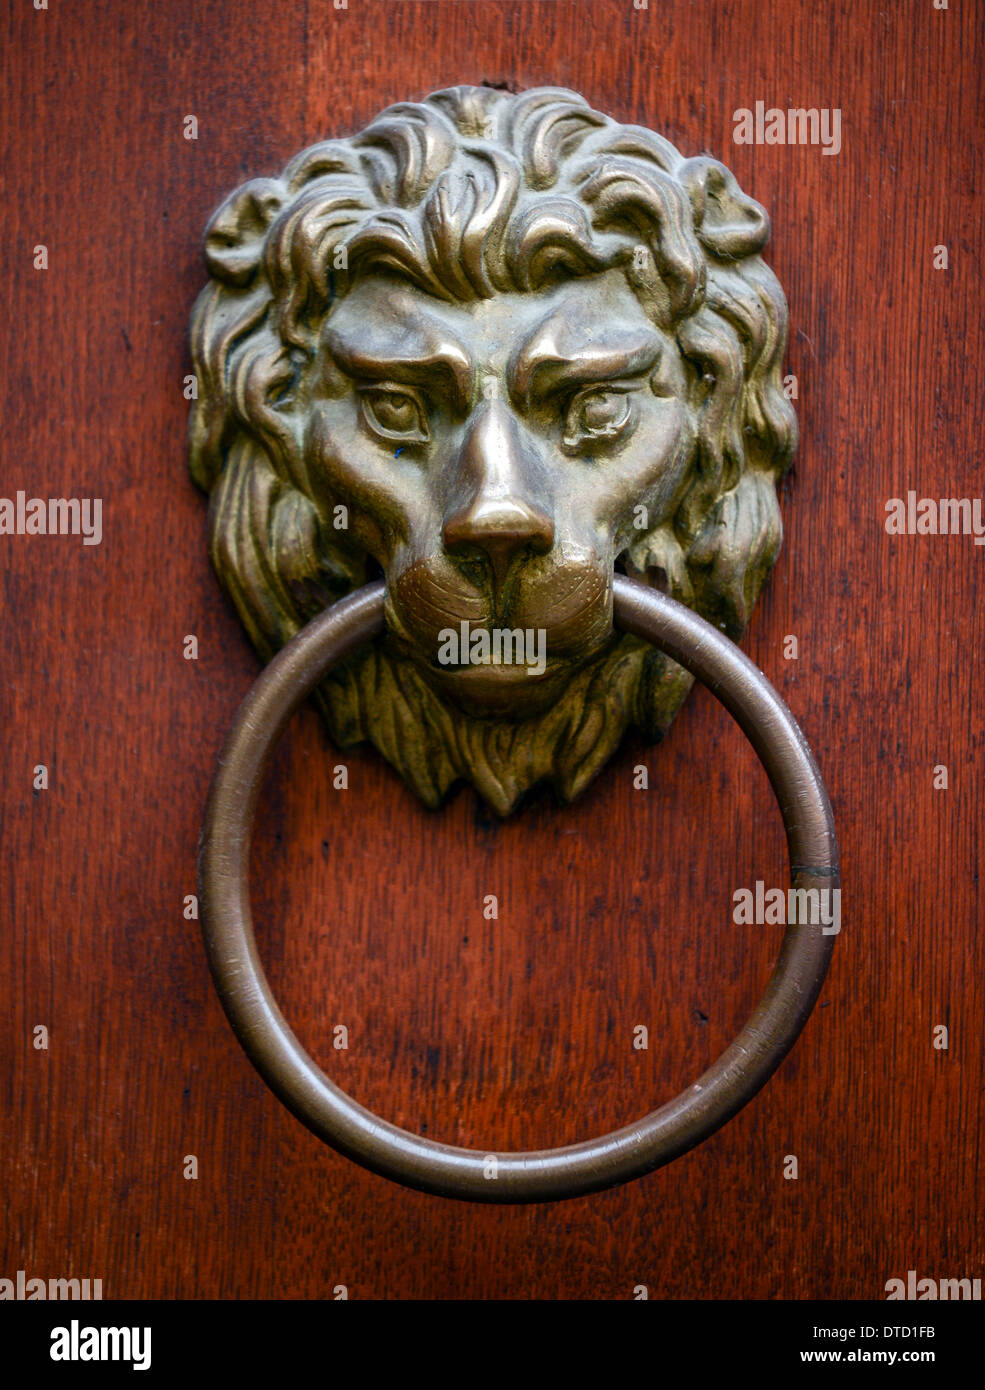 Lion door knocker on wooden door Stock Photo